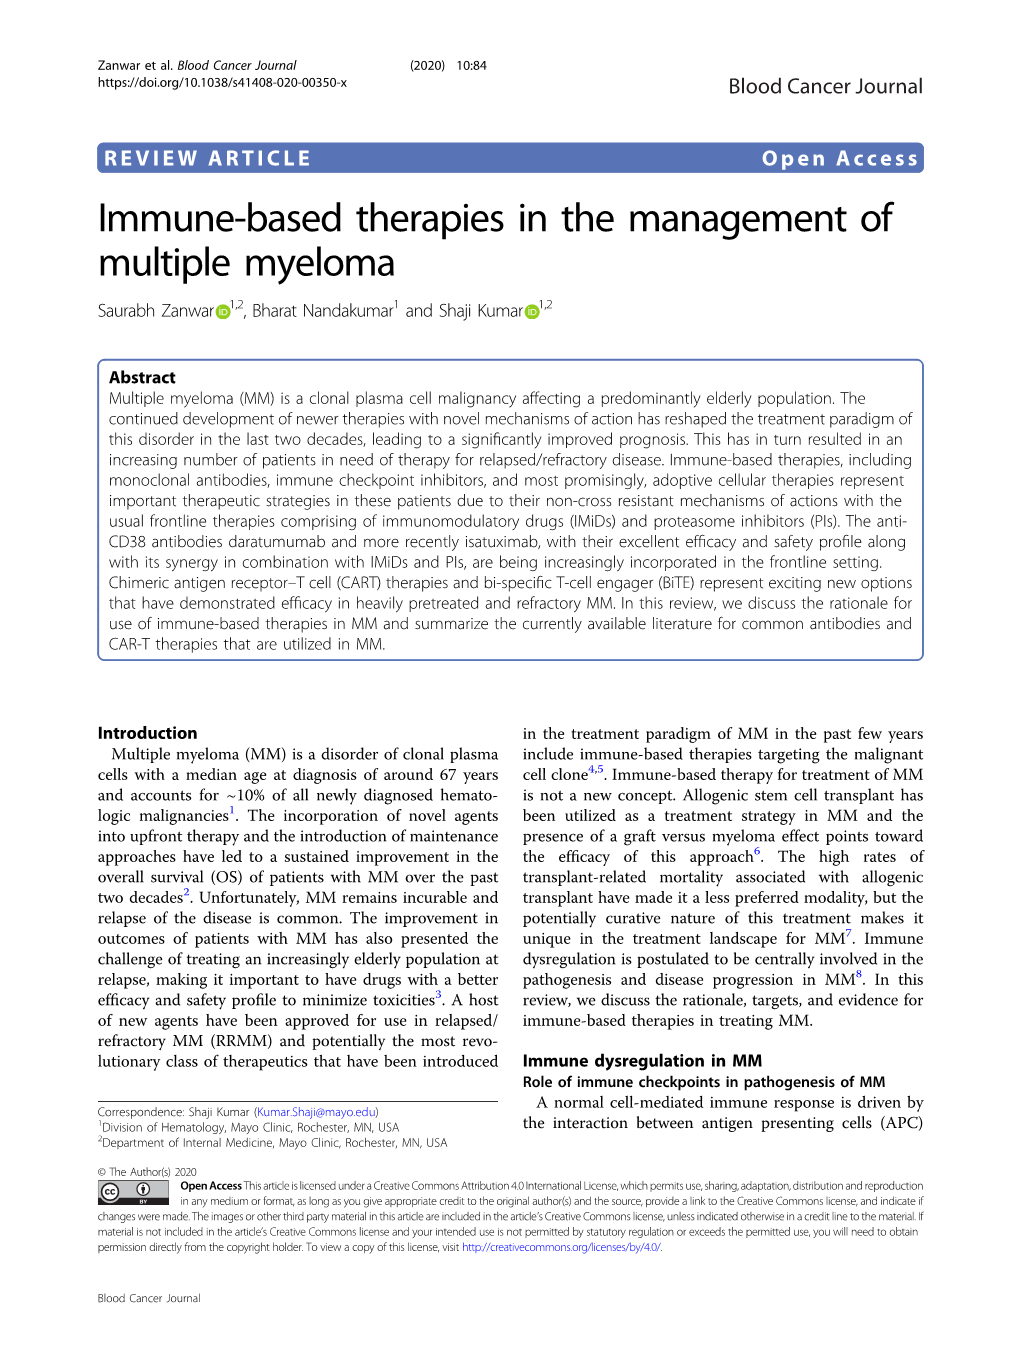 Immune-Based Therapies in the Management of Multiple Myeloma Saurabh Zanwar 1,2,Bharatnandakumar1 and Shaji Kumar 1,2